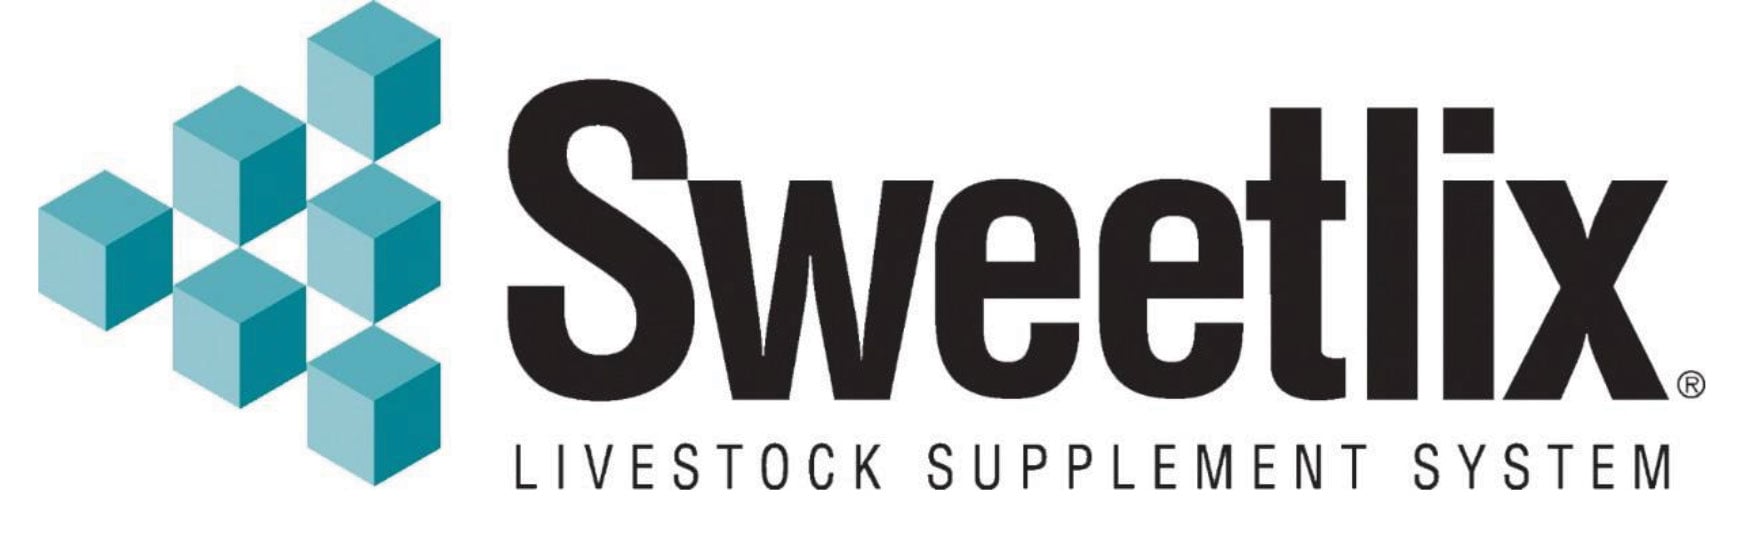 Sweetlix-logo